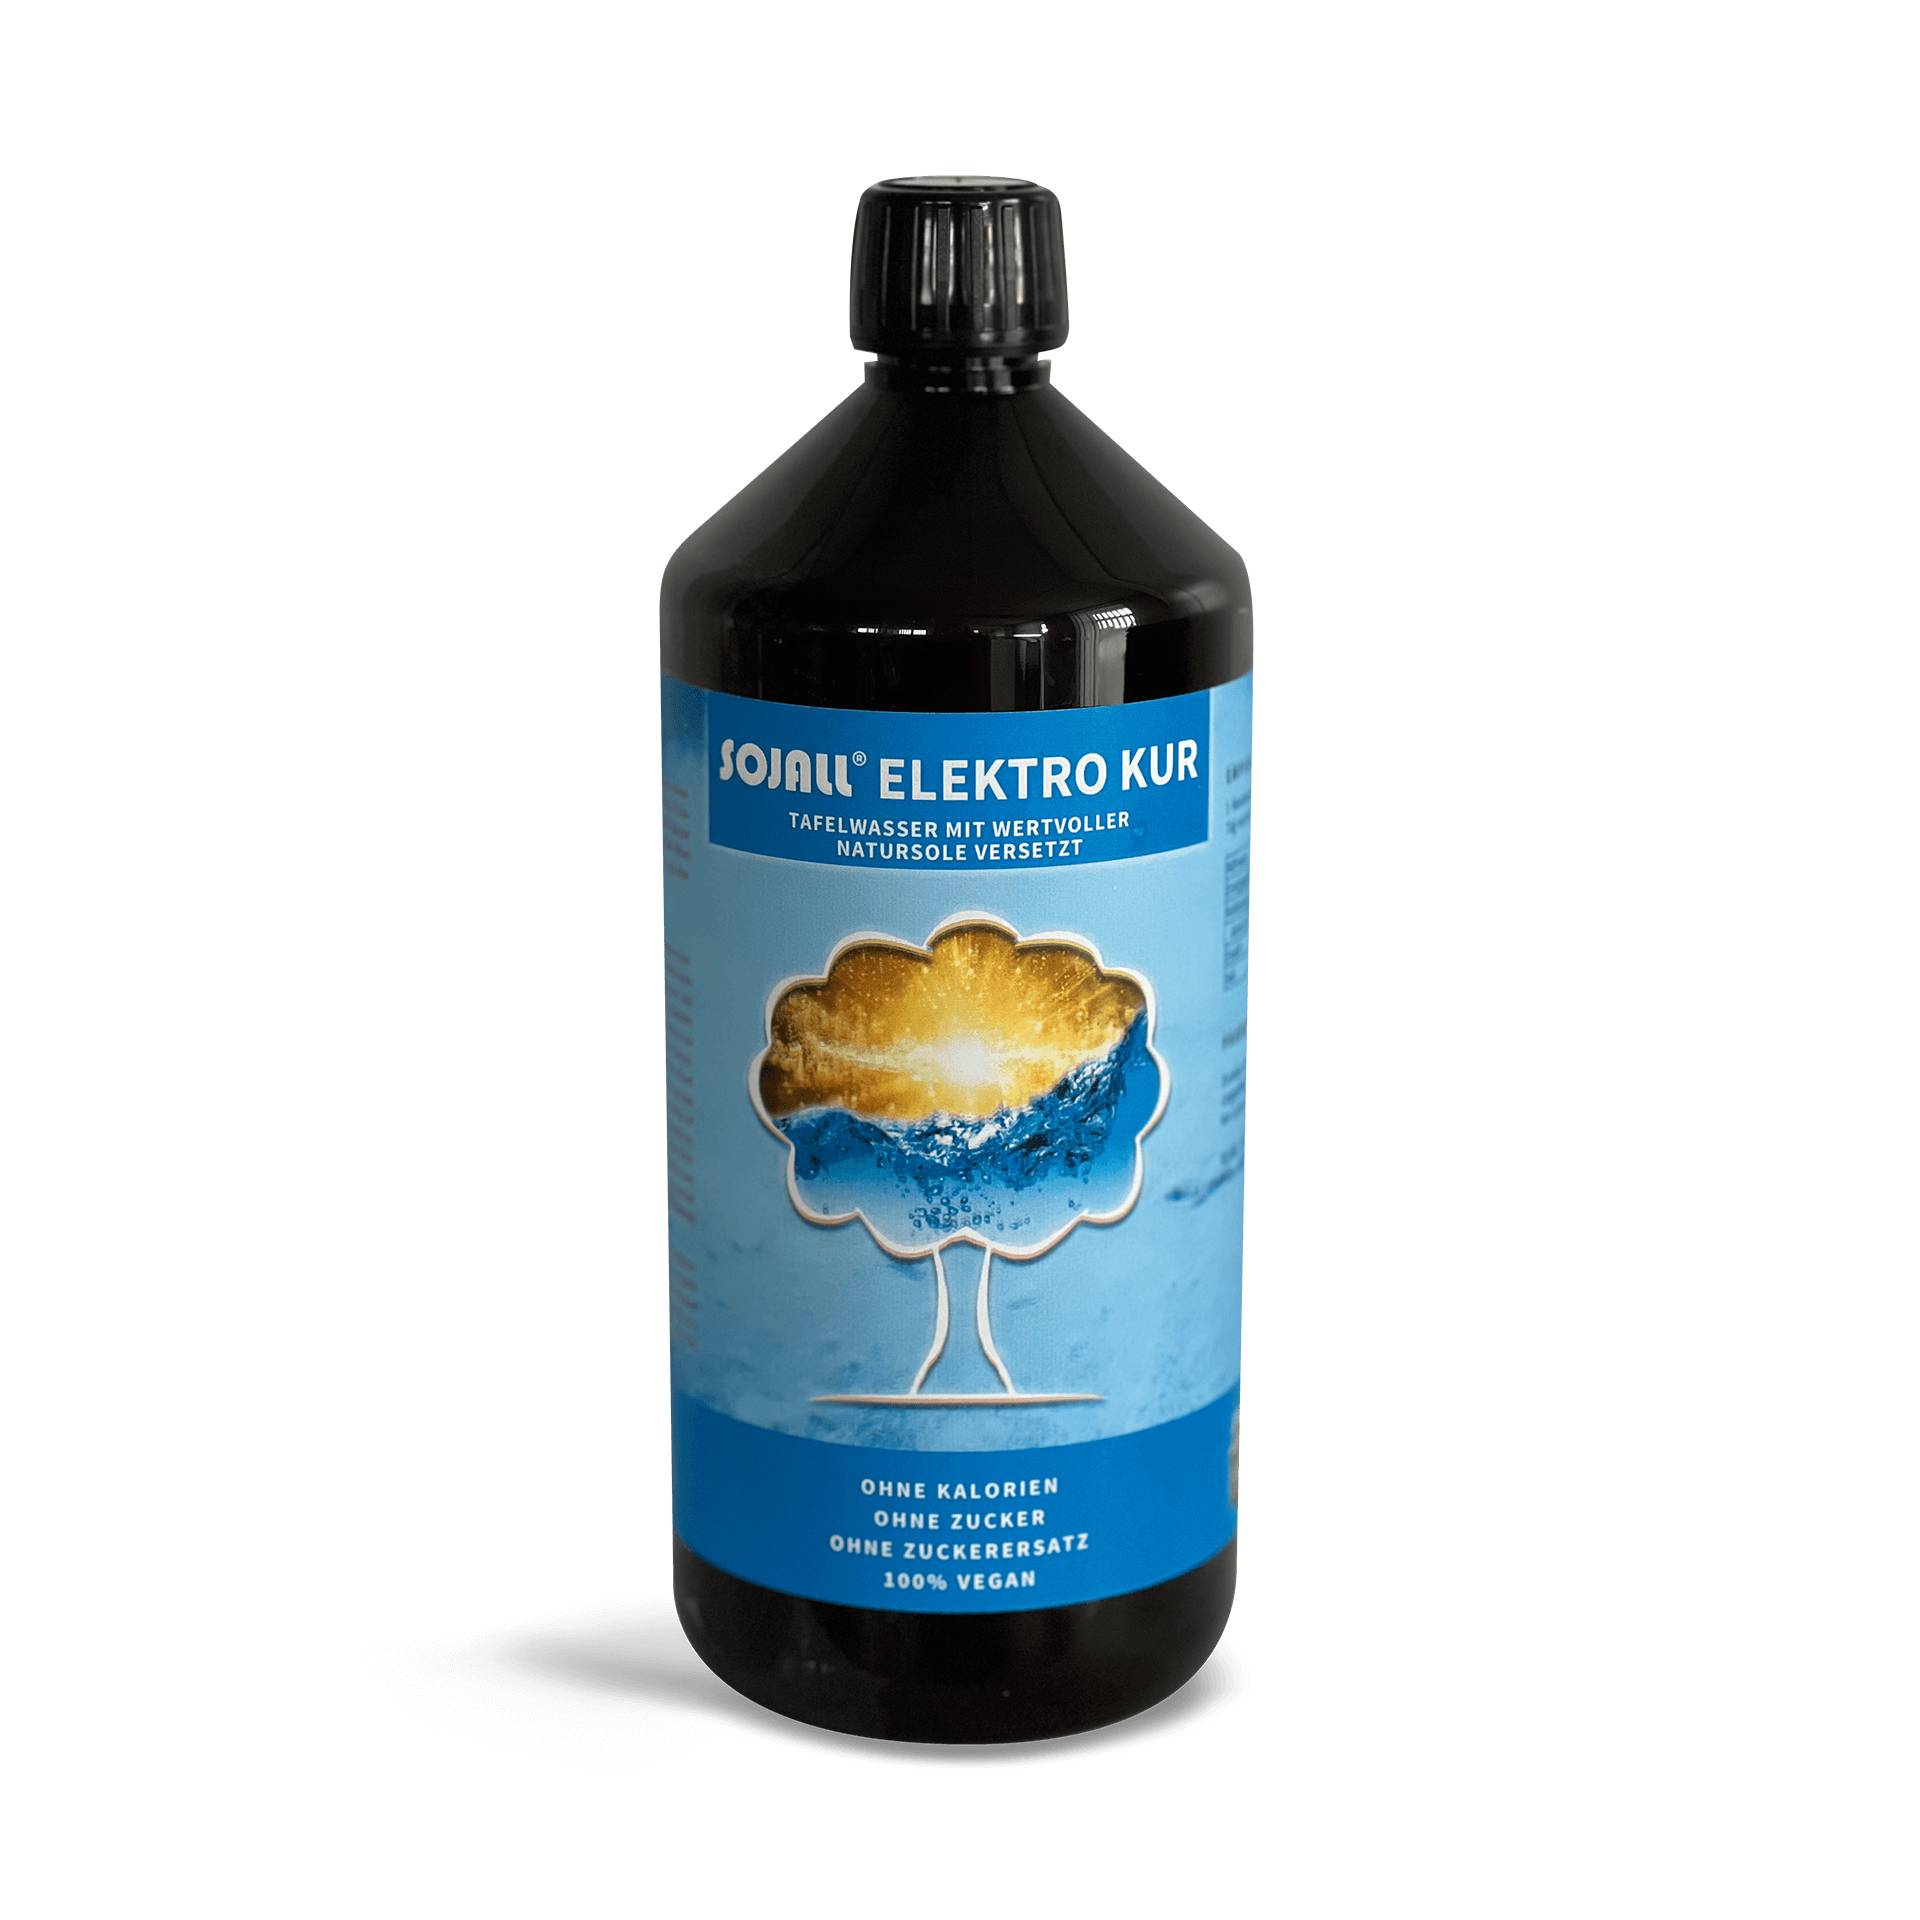 Sojall Elektro Kur 1000 ml - Mit natürlichen Elektrolyten - Erfrischt und reinigt - Vegan - Quintessence von Sojall Pro Natura